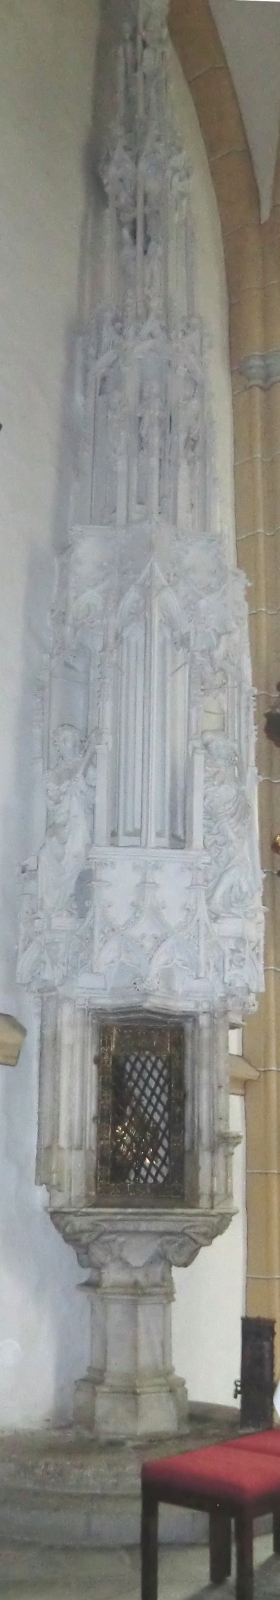 Das 13 Meter hohe Sakramentshäuschen aus Sandstein in der Pfarrkirche in Heiligenblut